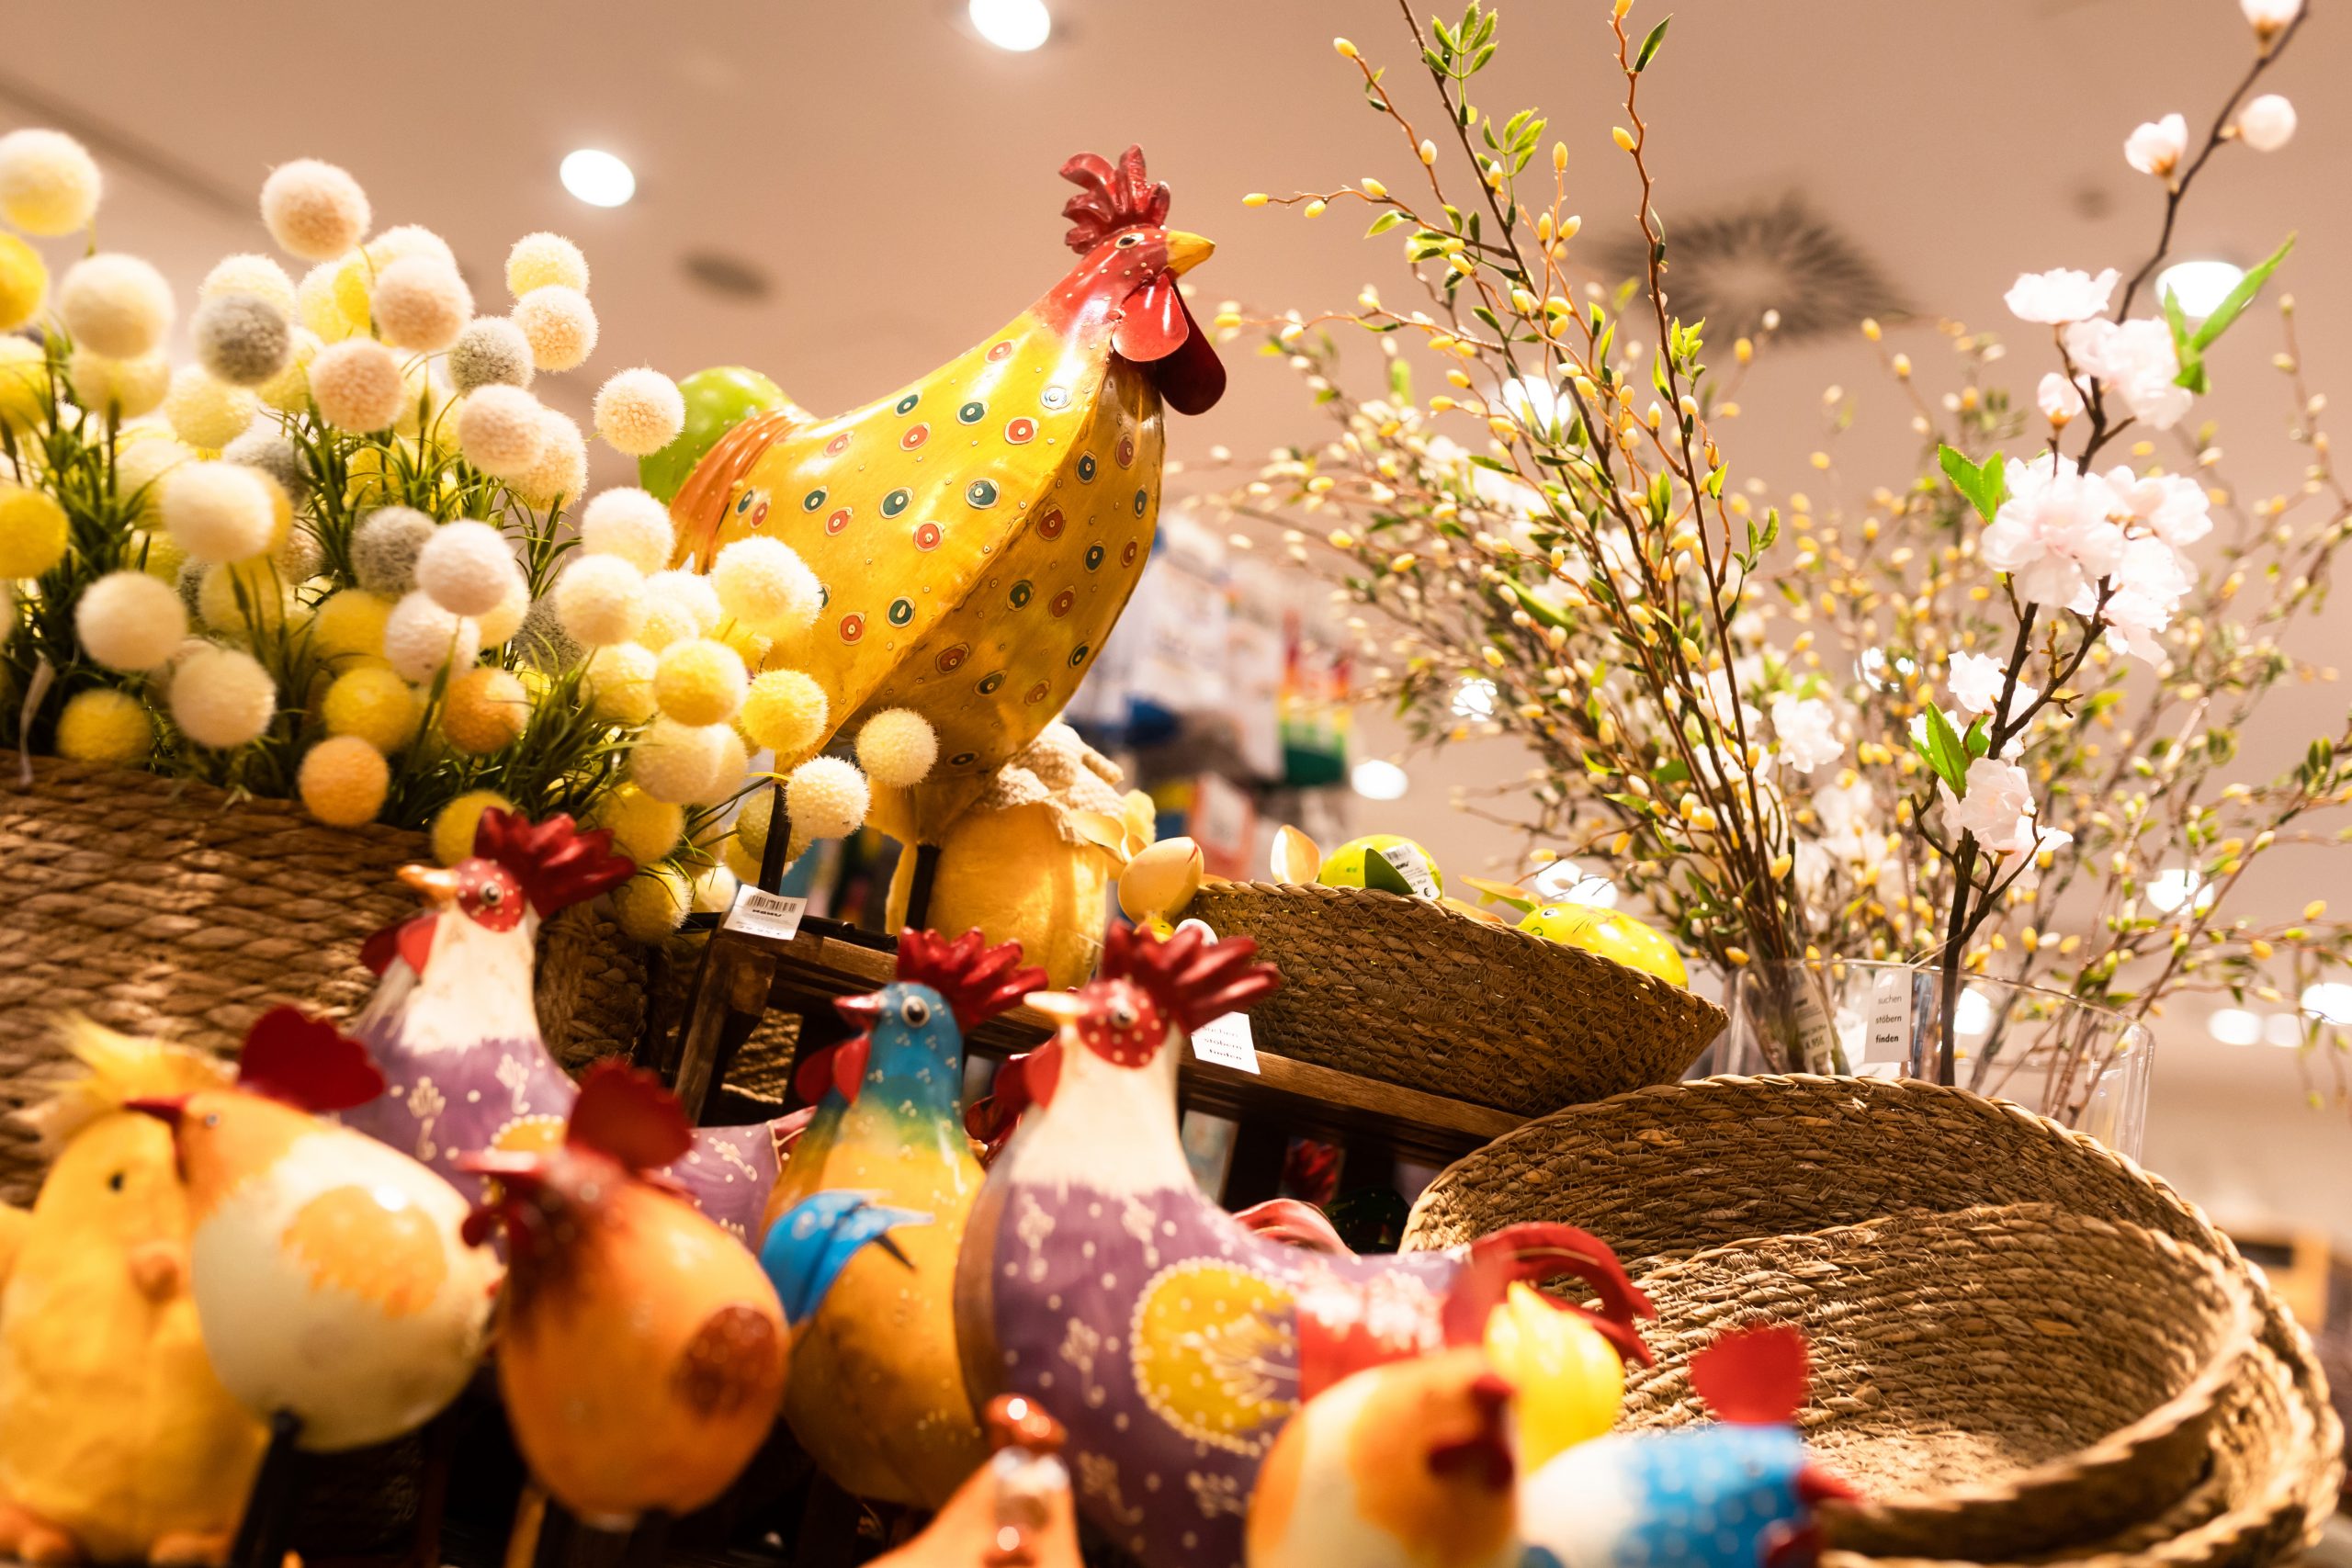 Výzdoba, zkrocení beránka a zajímavé tradice. Velikonoce se blíží!